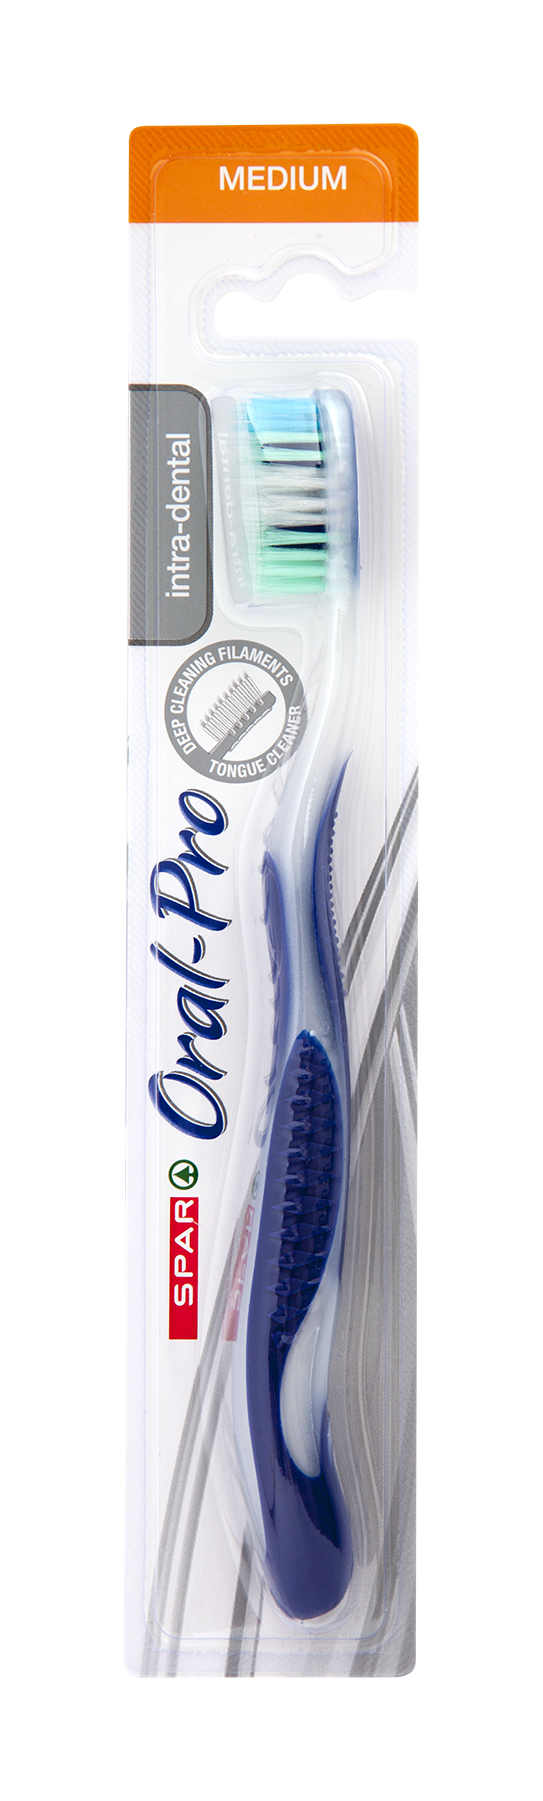 oral pro toothbrush intra dental - medium